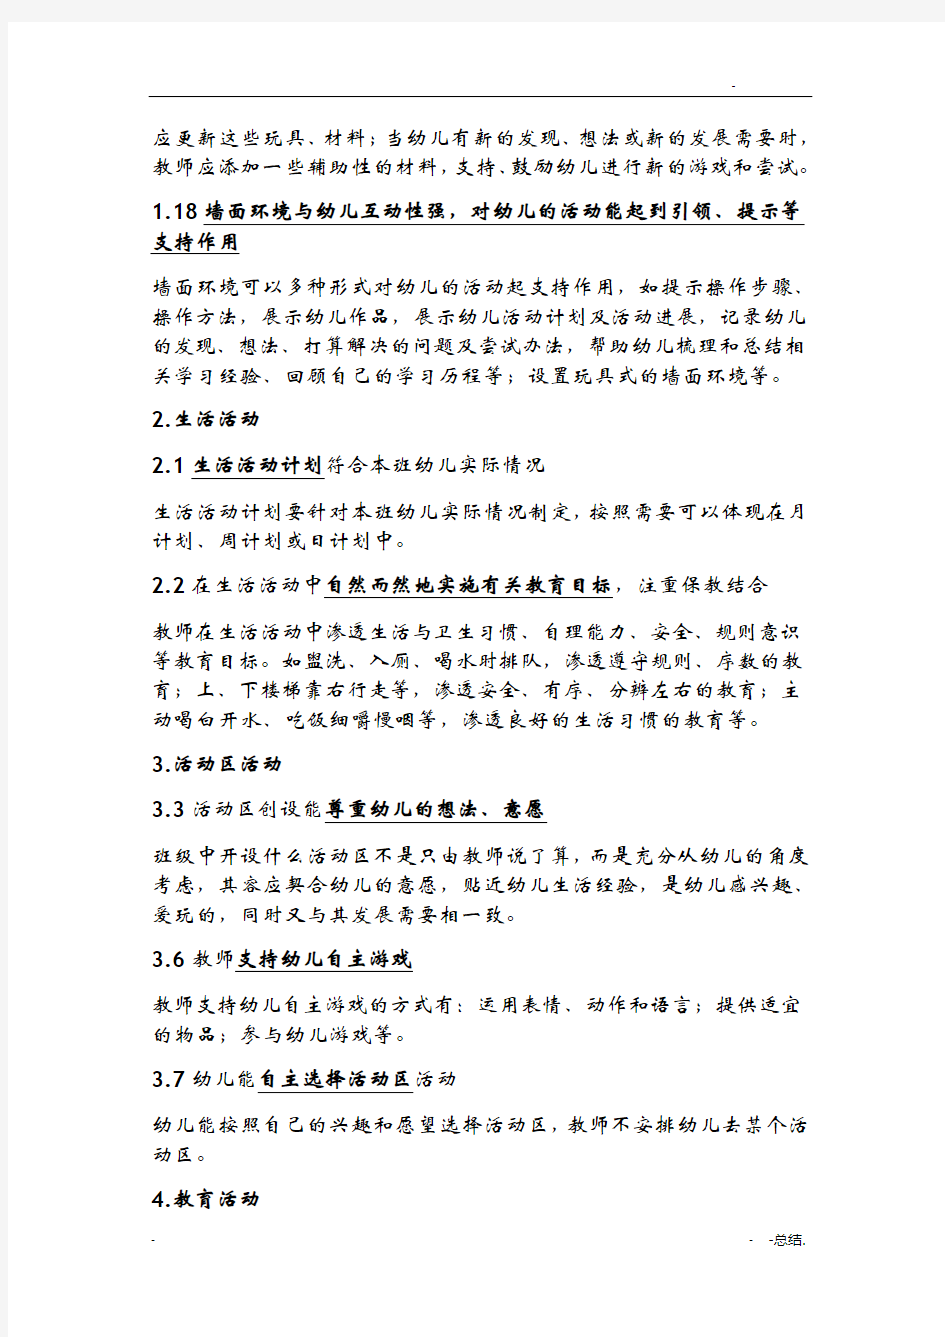 北京市幼儿园课程综合评价标准细则